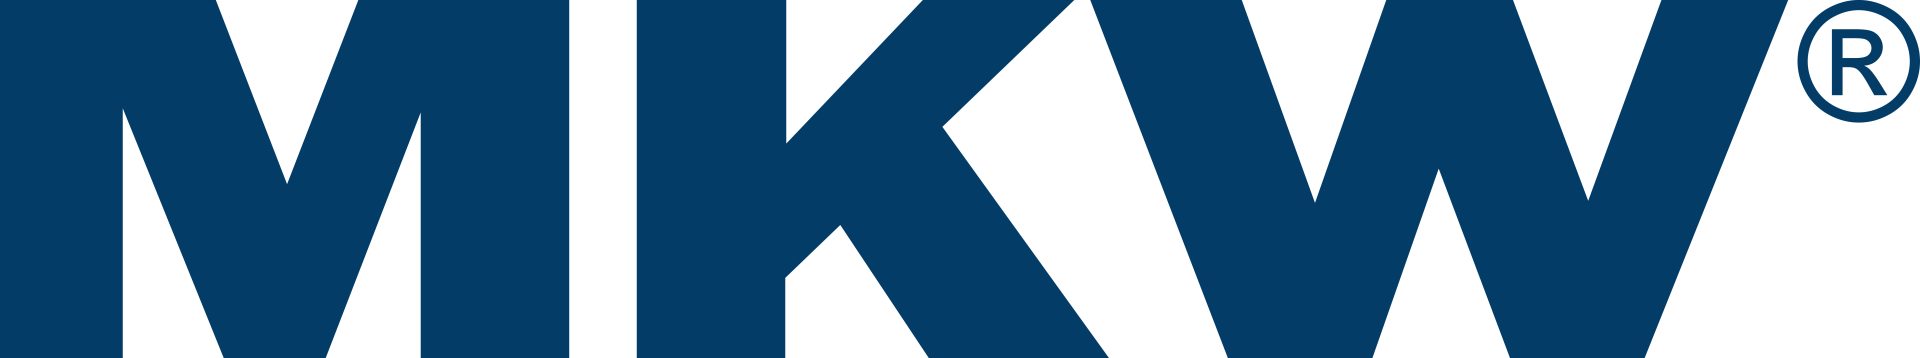 MKW Logo